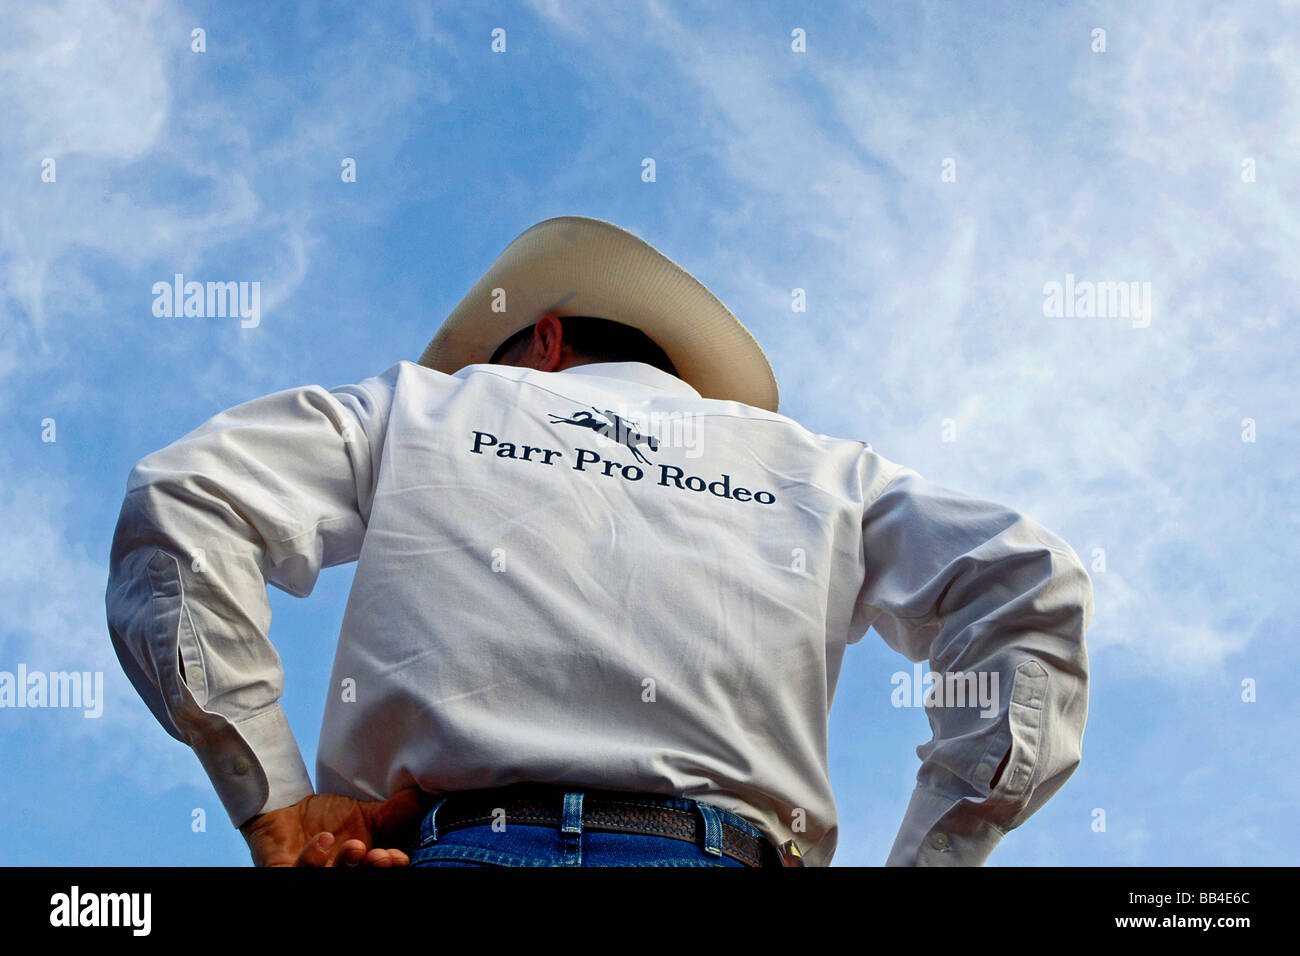 Rodeo Cowboy Umfragen das Feld in der weiten, offenen Flächen der südwestlichen Vereinigten Staaten mit einem tiefblauen Himmel seine helle Gestaltung wir Stockfoto